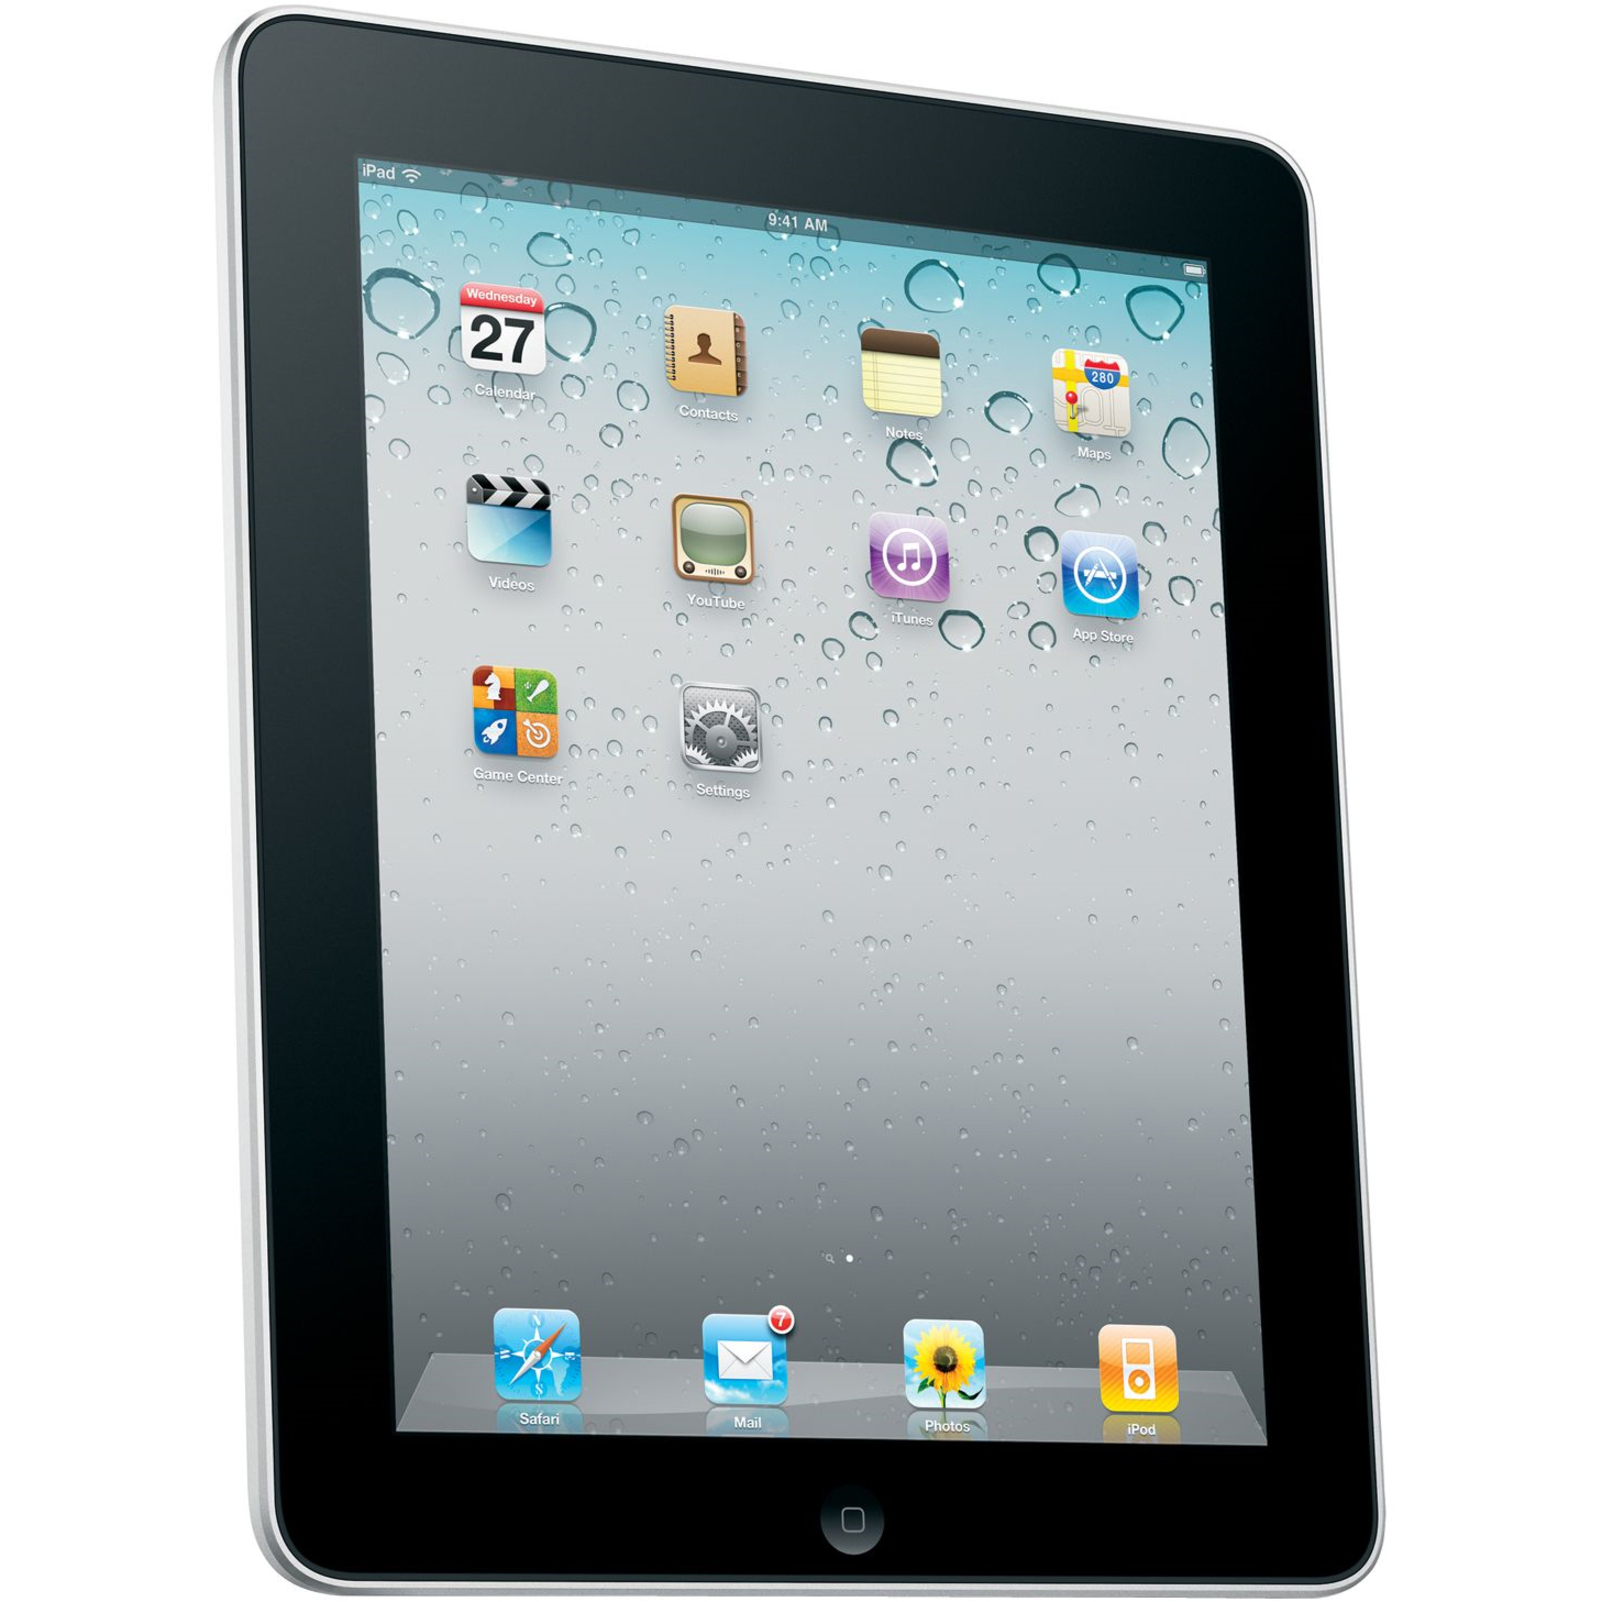 Apple iPad MB293LL/A Tablet, 9.7" XGA, Apple A4, 32 GB Storage, iPad OS - image 1 of 7